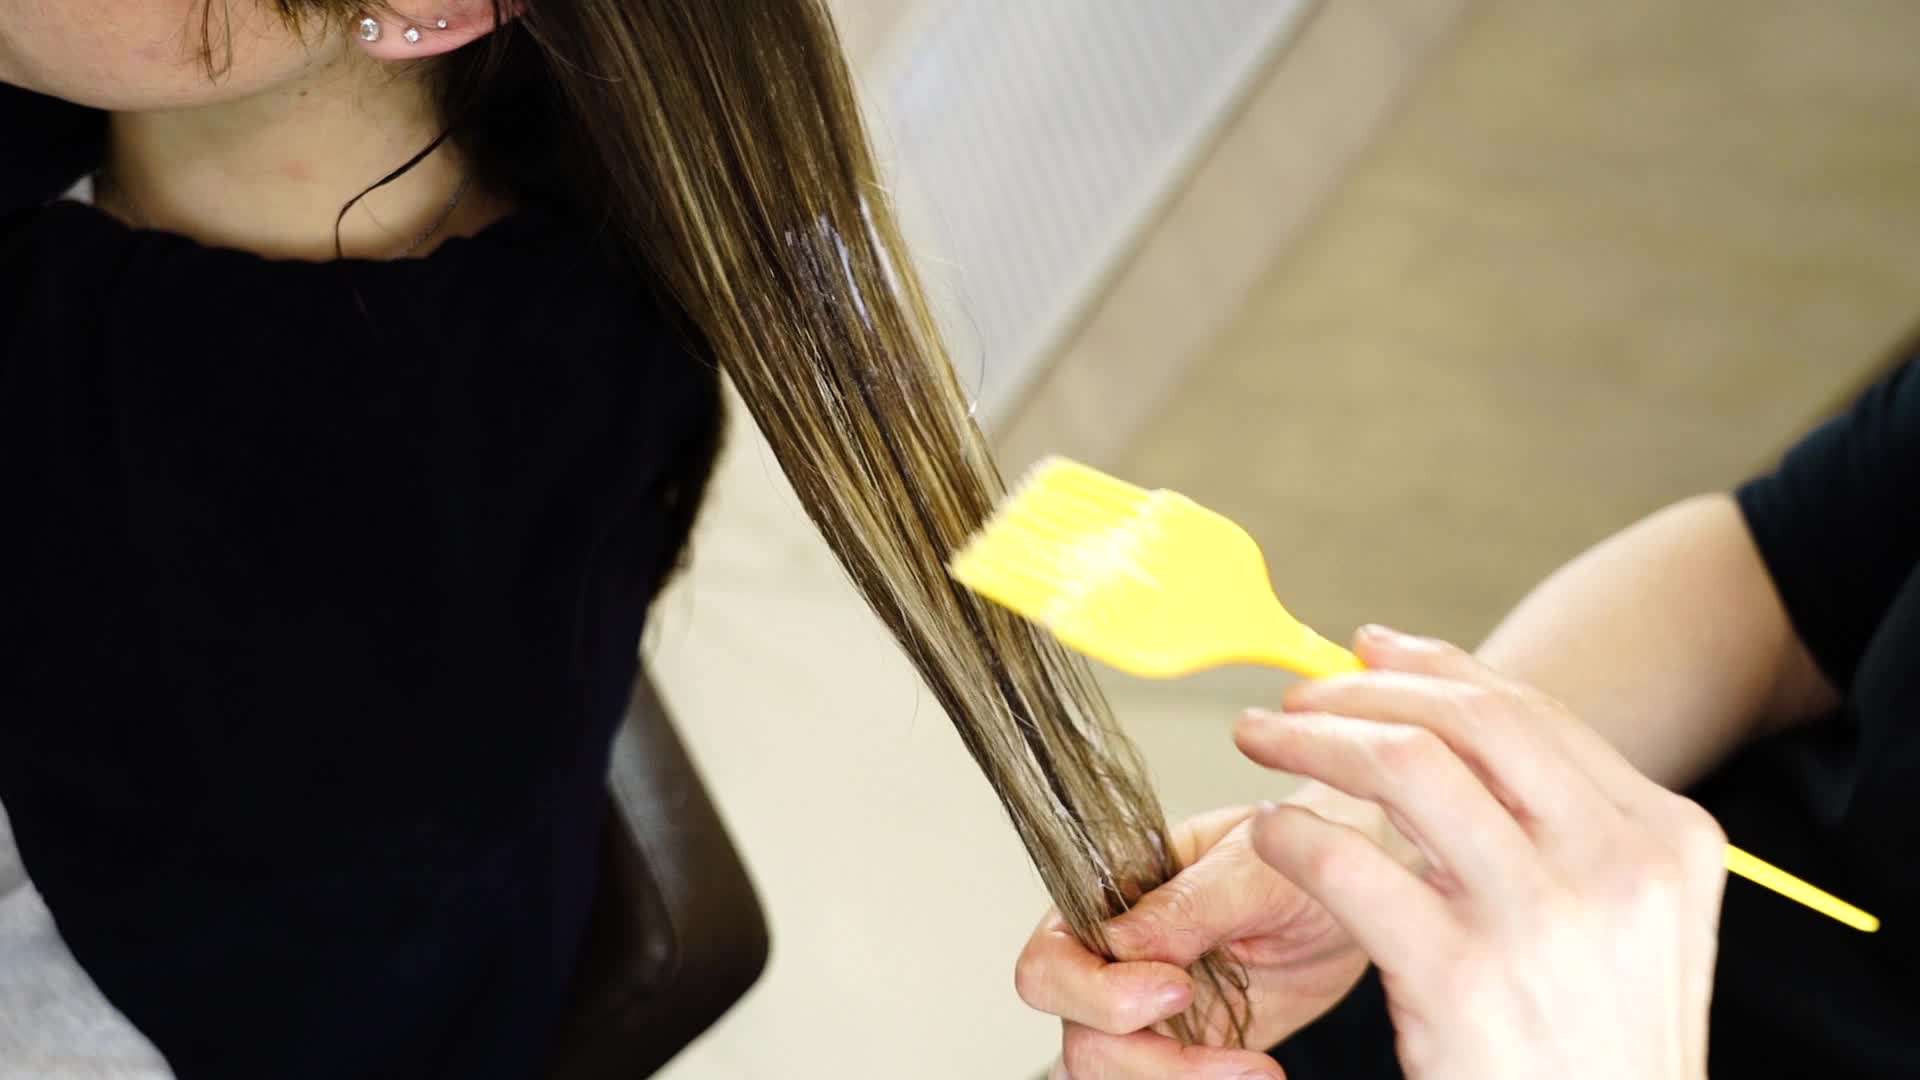 Il parrucchiere applica il fissatore sui capelli della donna con la spazzola gialla